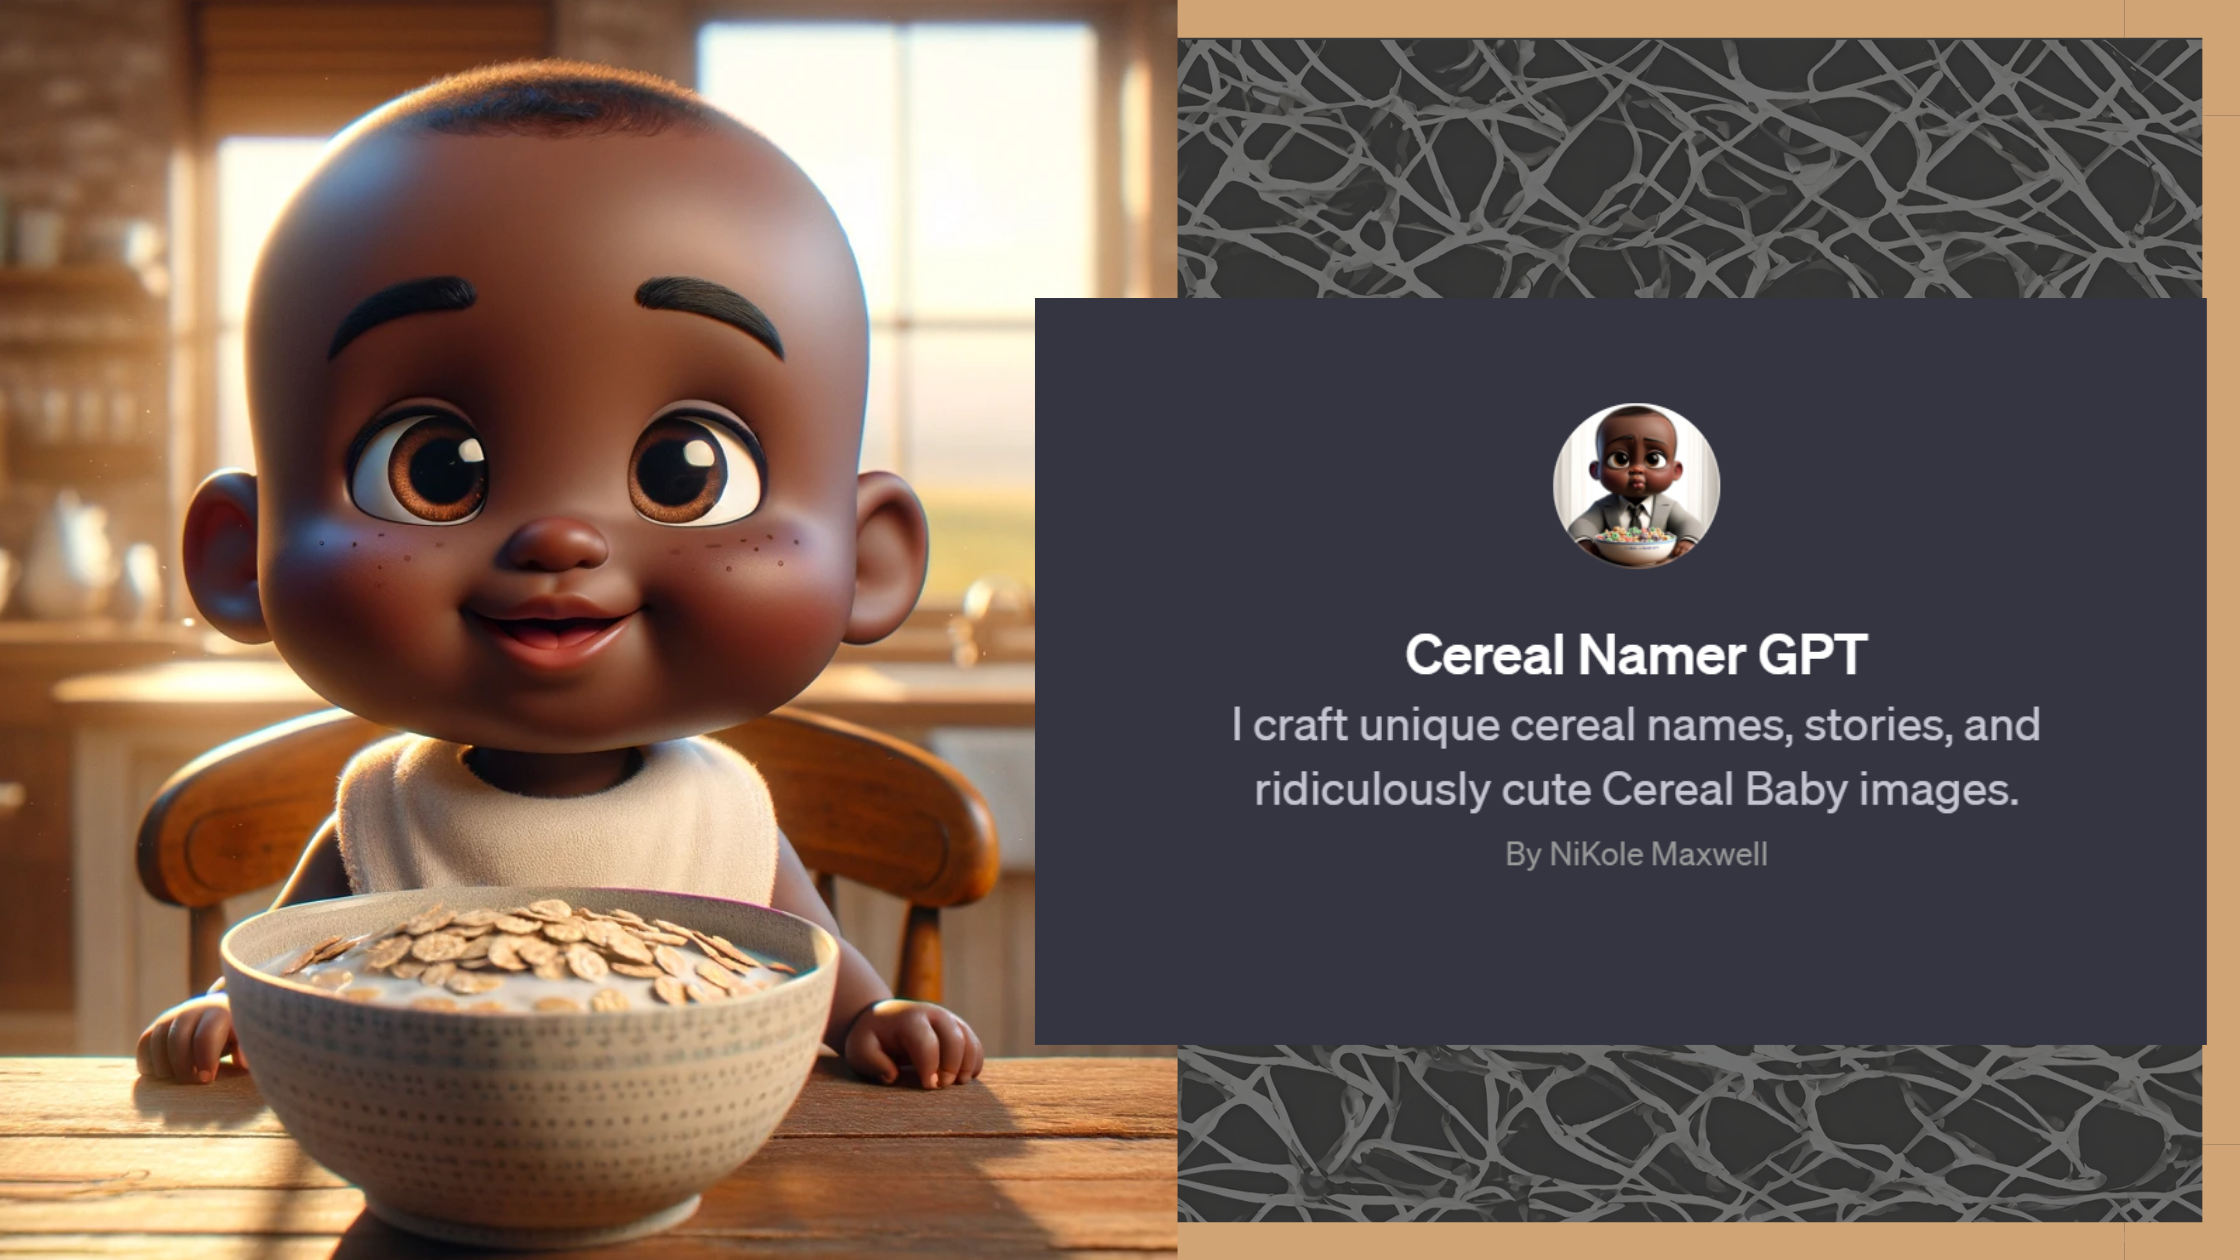 Cereal Namer GPT